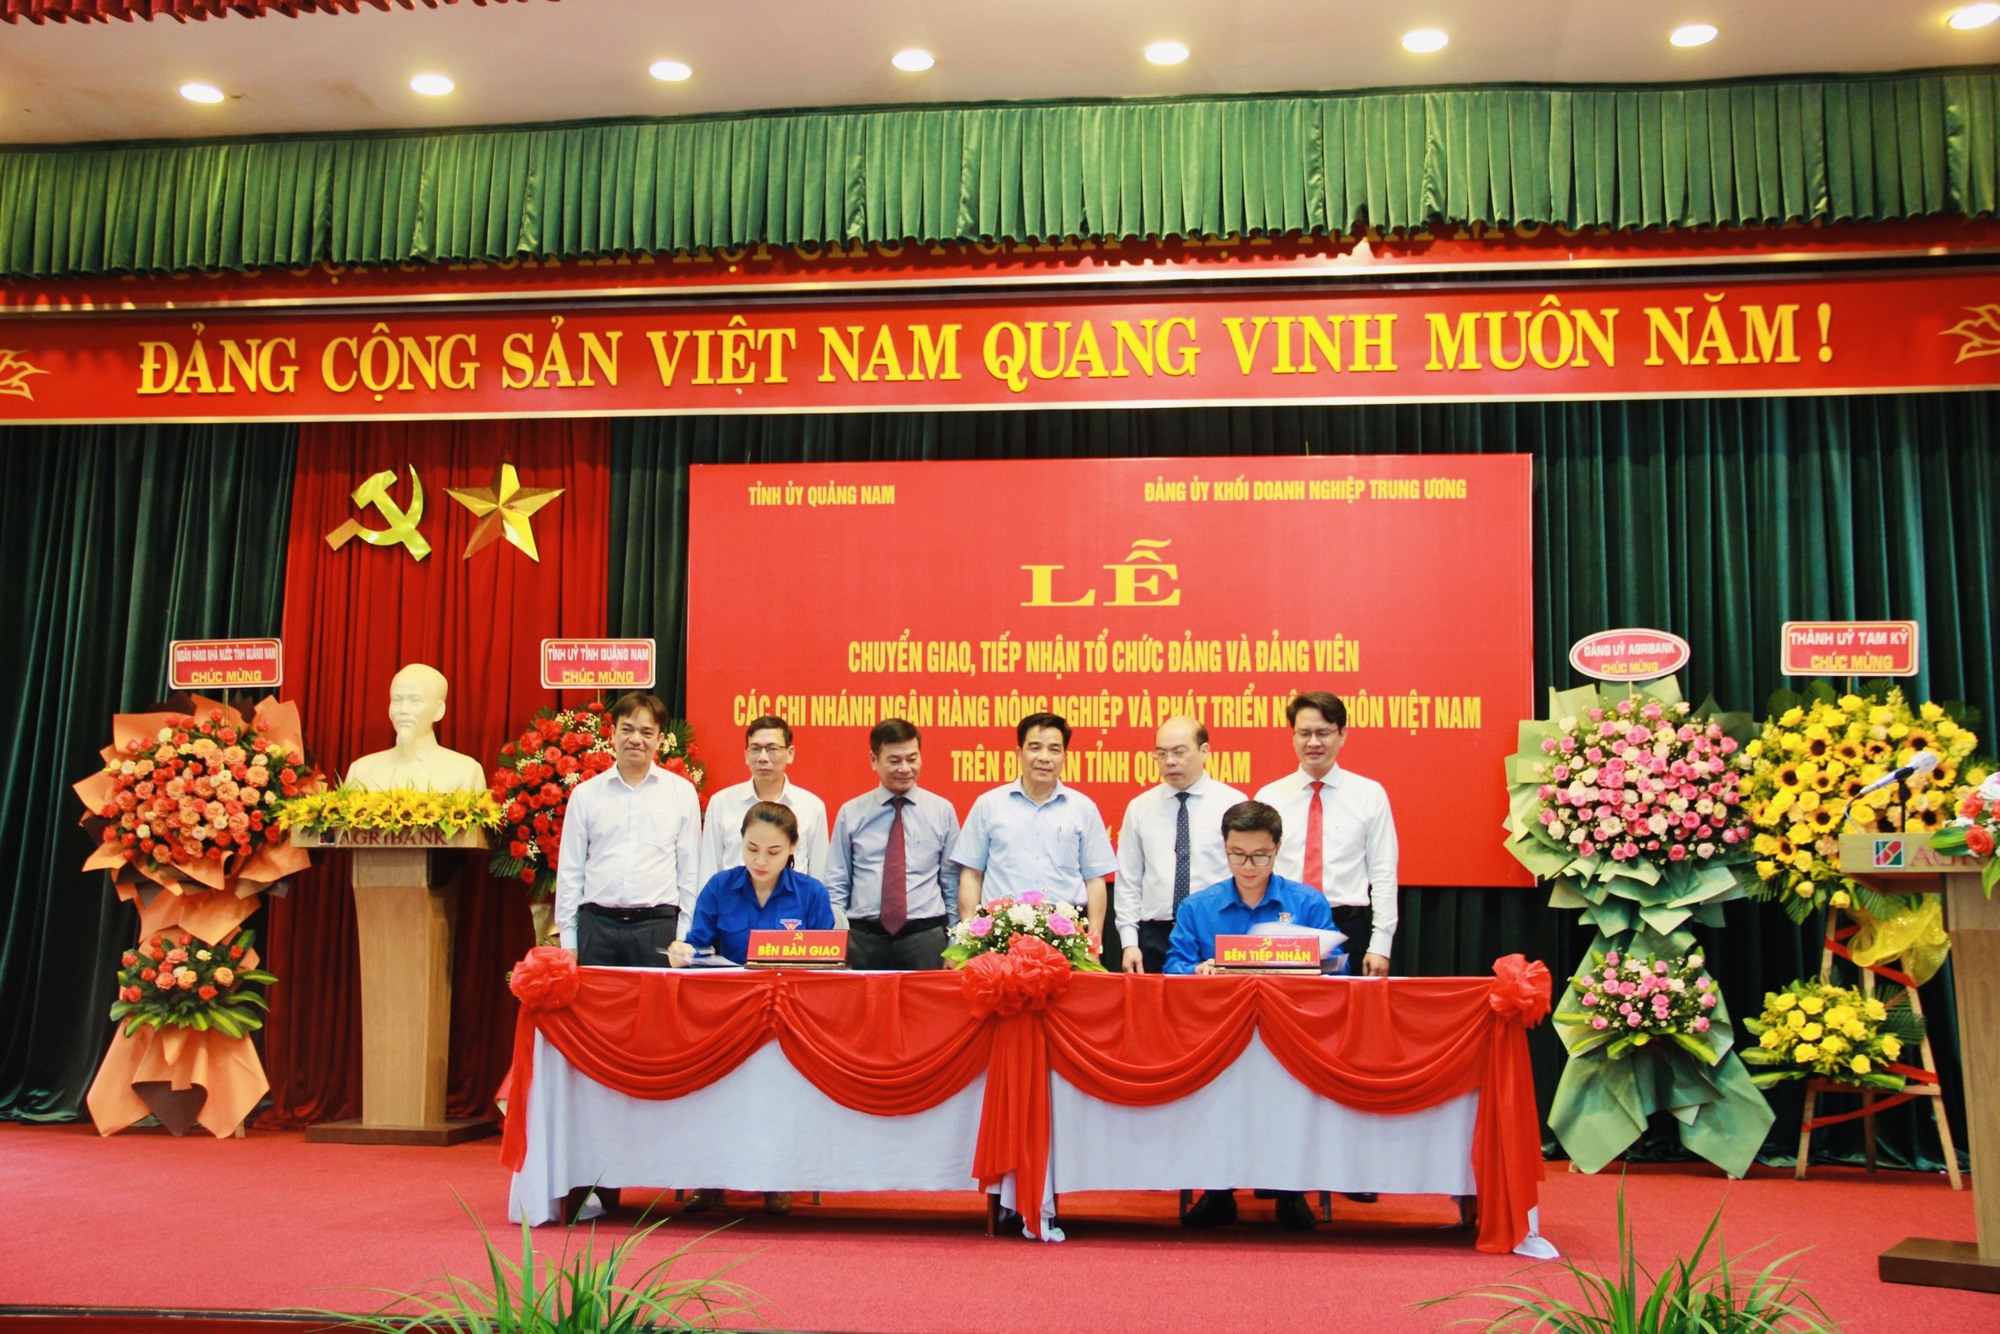 Lễ chuyển giao – tiếp nhận tổ chức đảng, đảng viên trong các Chi nhánh Agribank trên địa bàn tỉnh Quảng Nam - Ảnh 5.